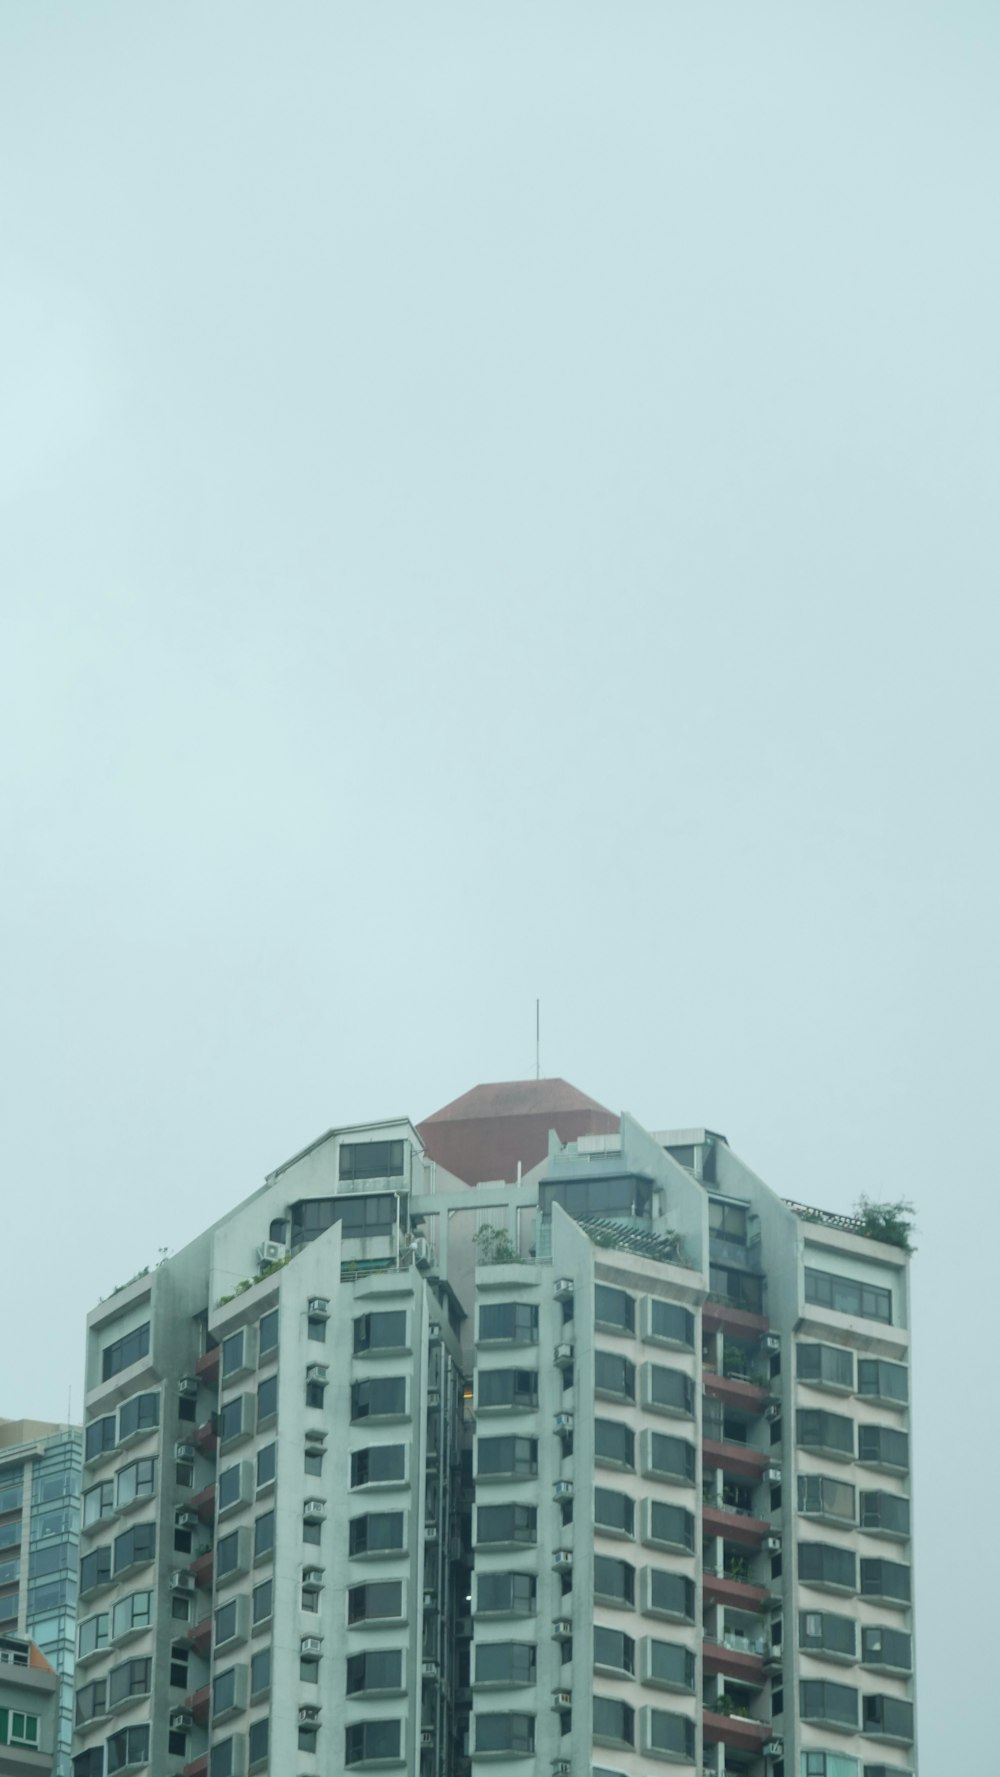 Ein hohes Gebäude mit rotem Dach an einem bewölkten Tag